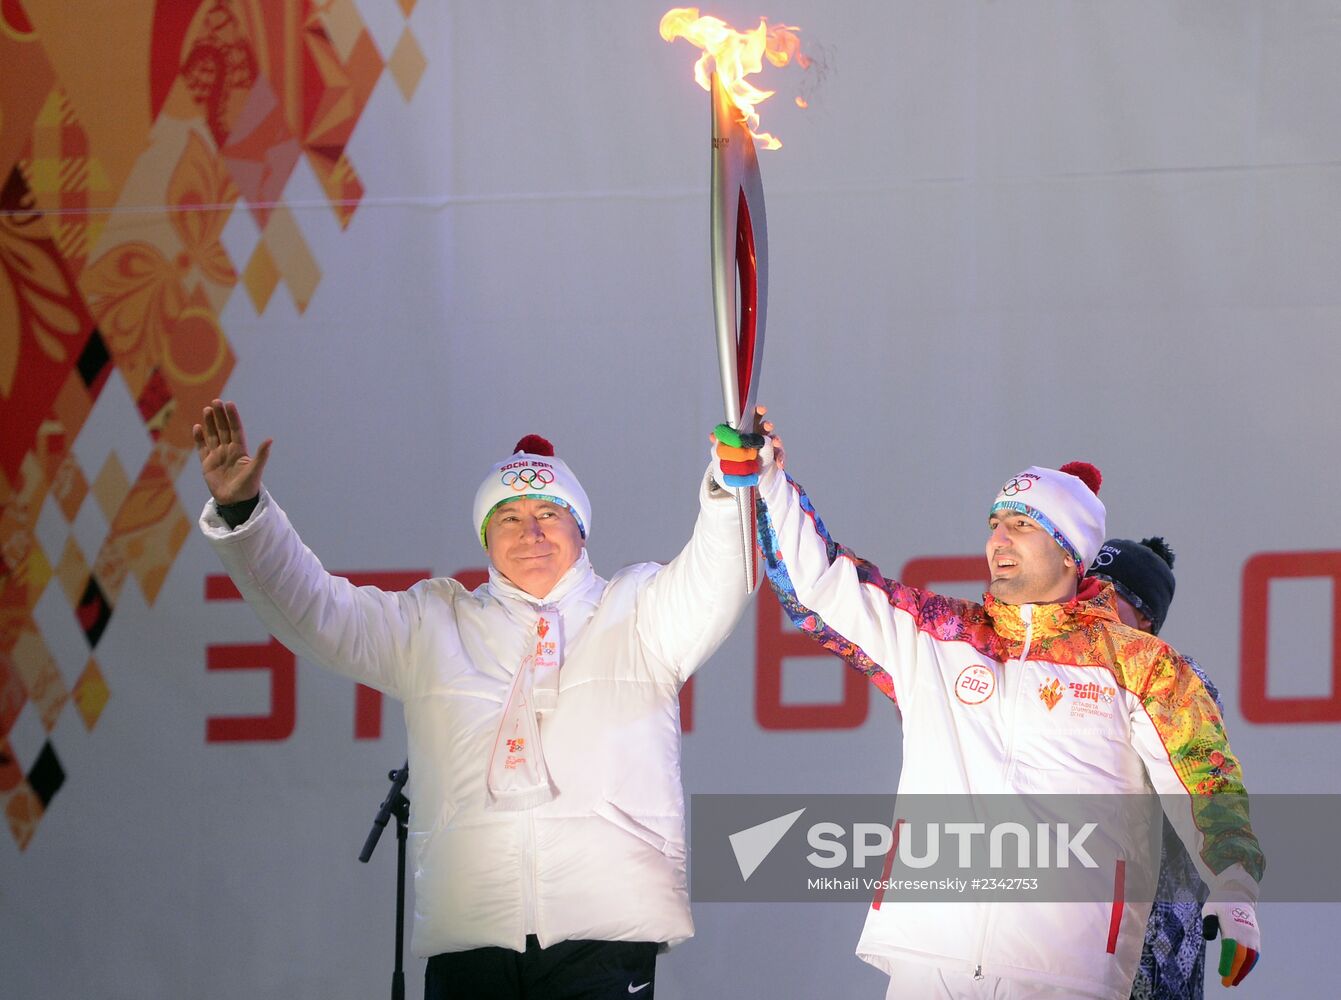 Sochi 2014 Olympic torch relay. Samara